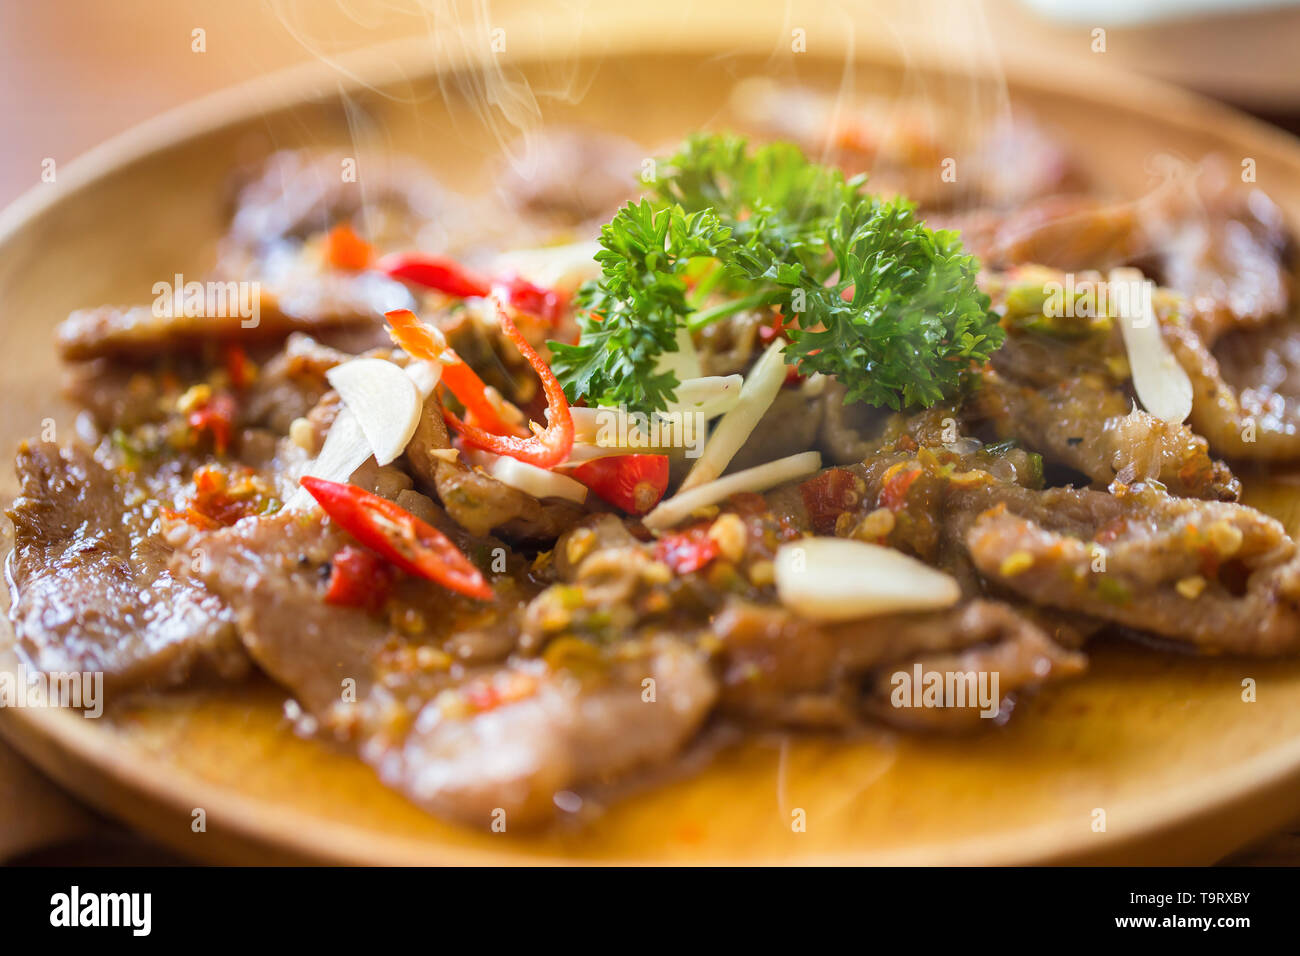 Caldo e carne piccante stir fry ricetta con peperoncino e aglio in stile tailandese per la cottura Foto Stock